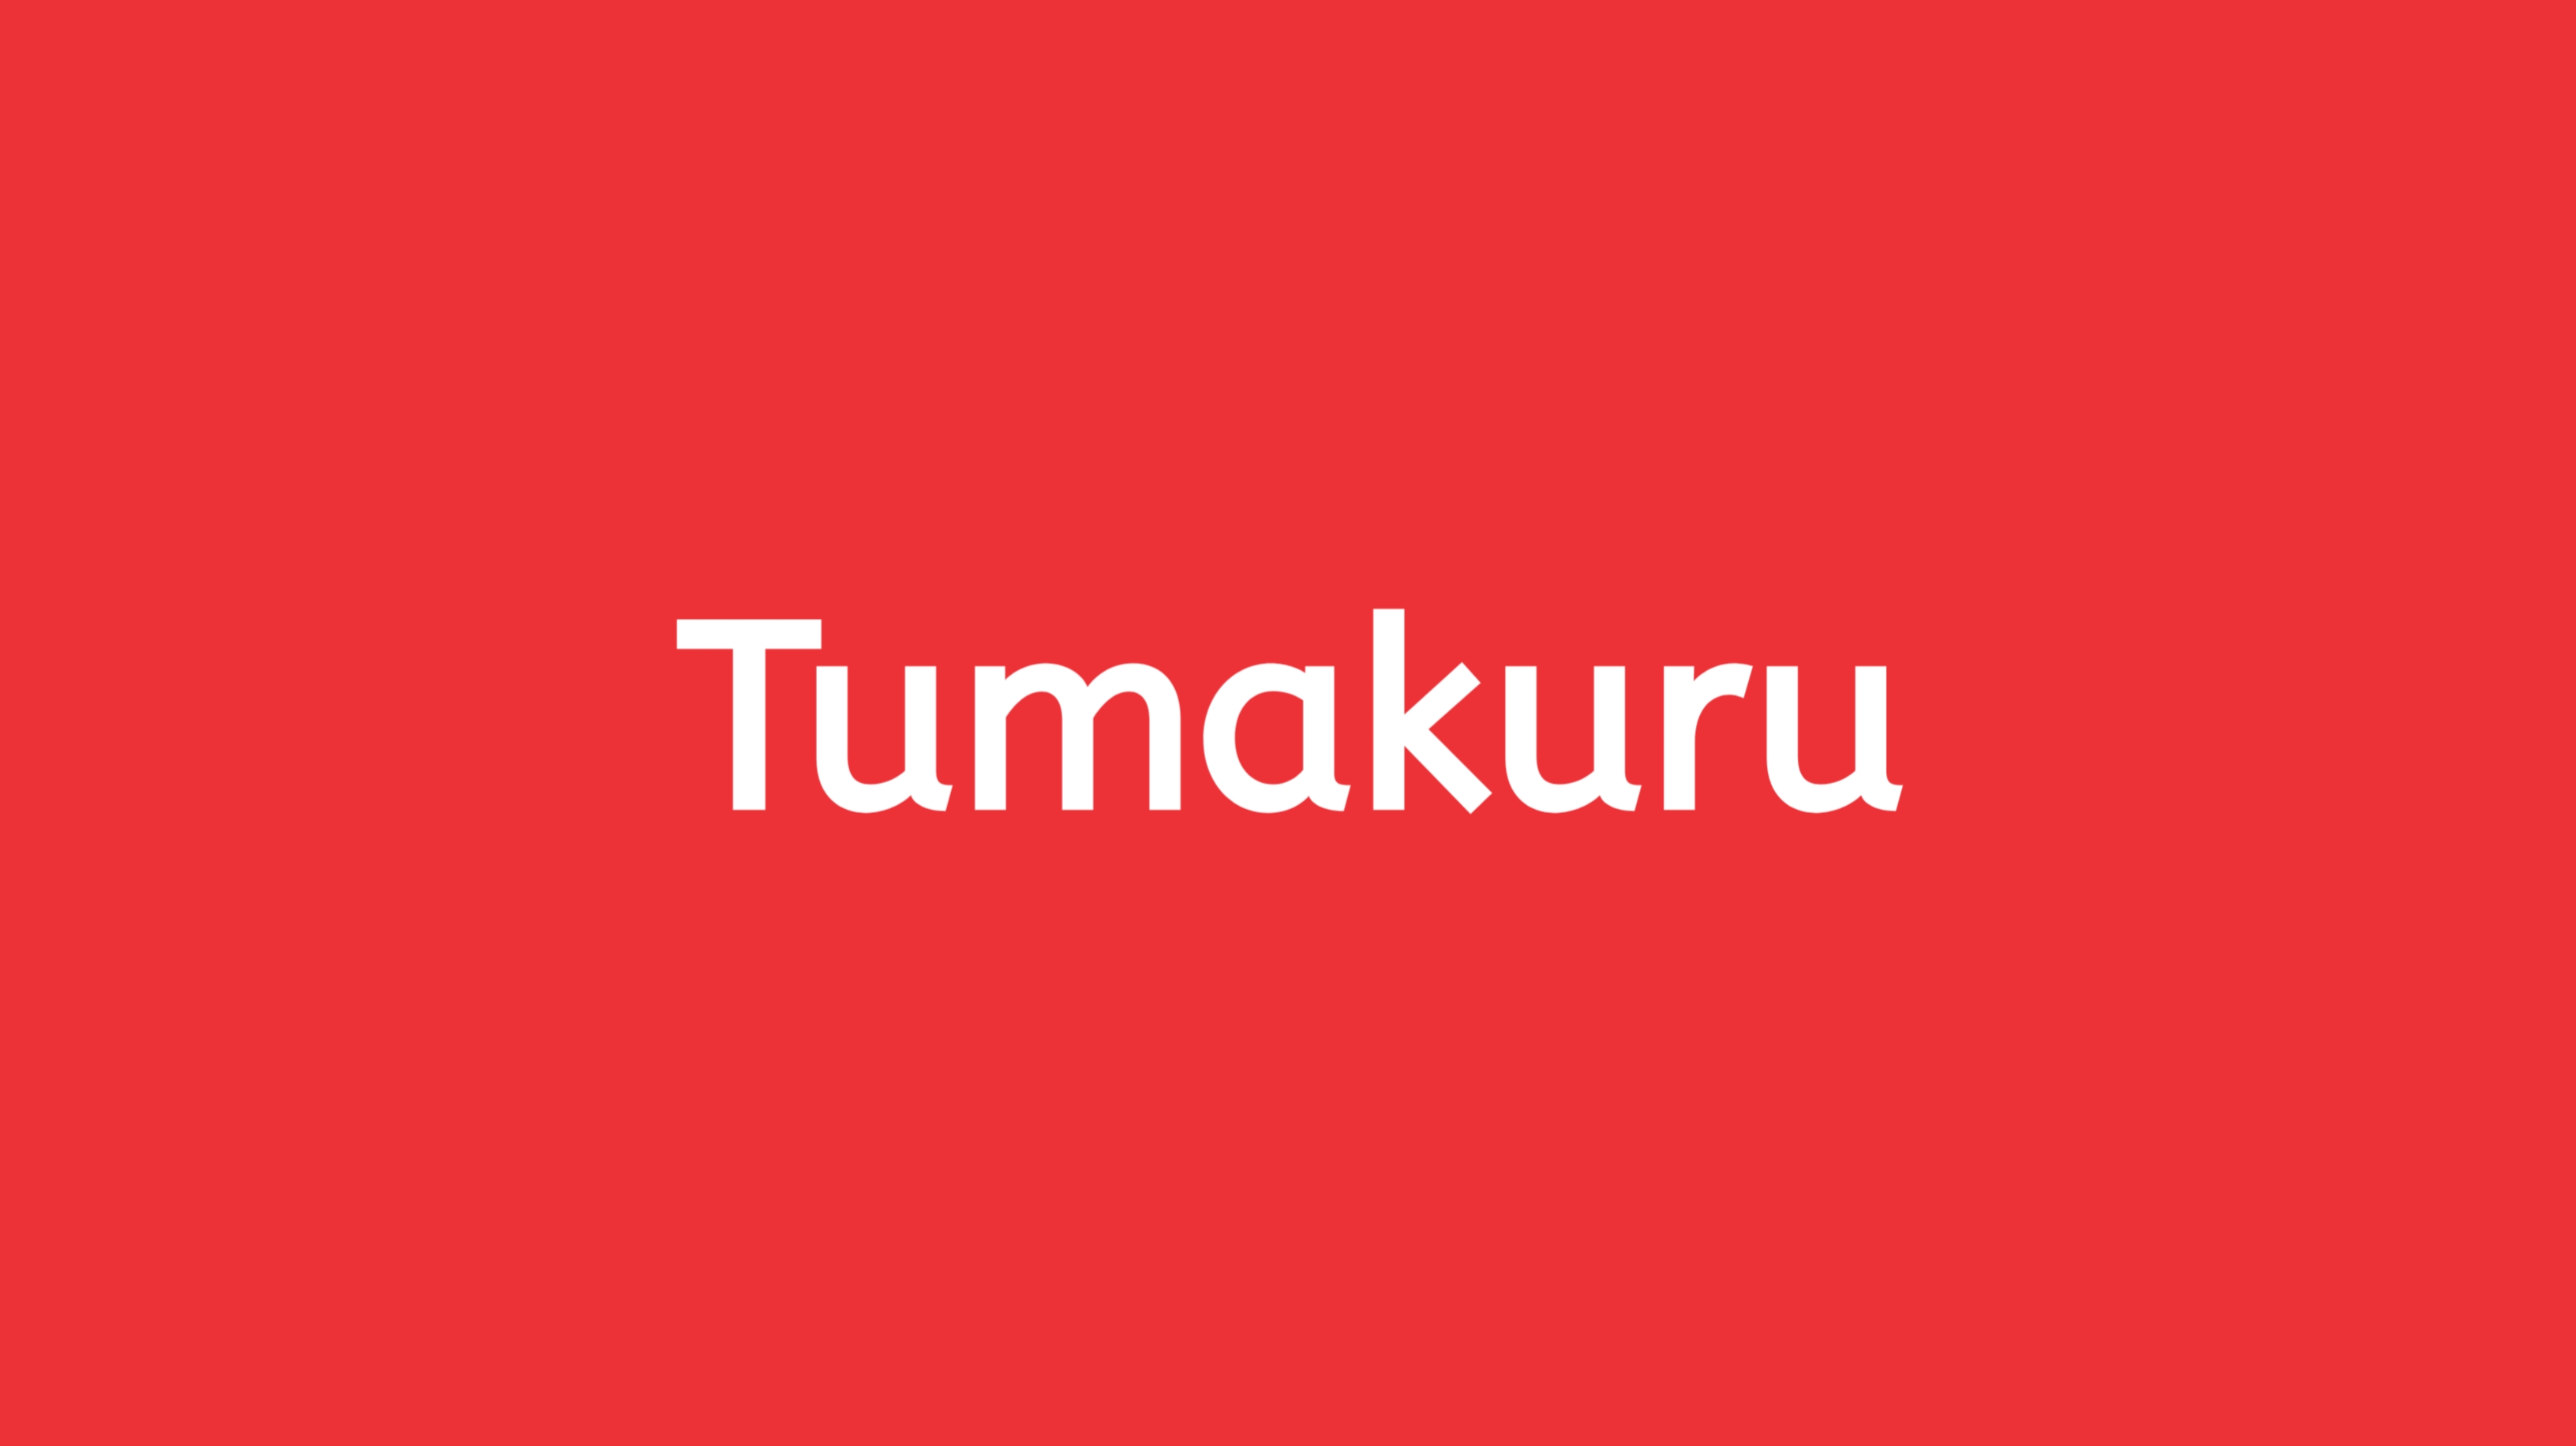 StayFit - Tumakuru